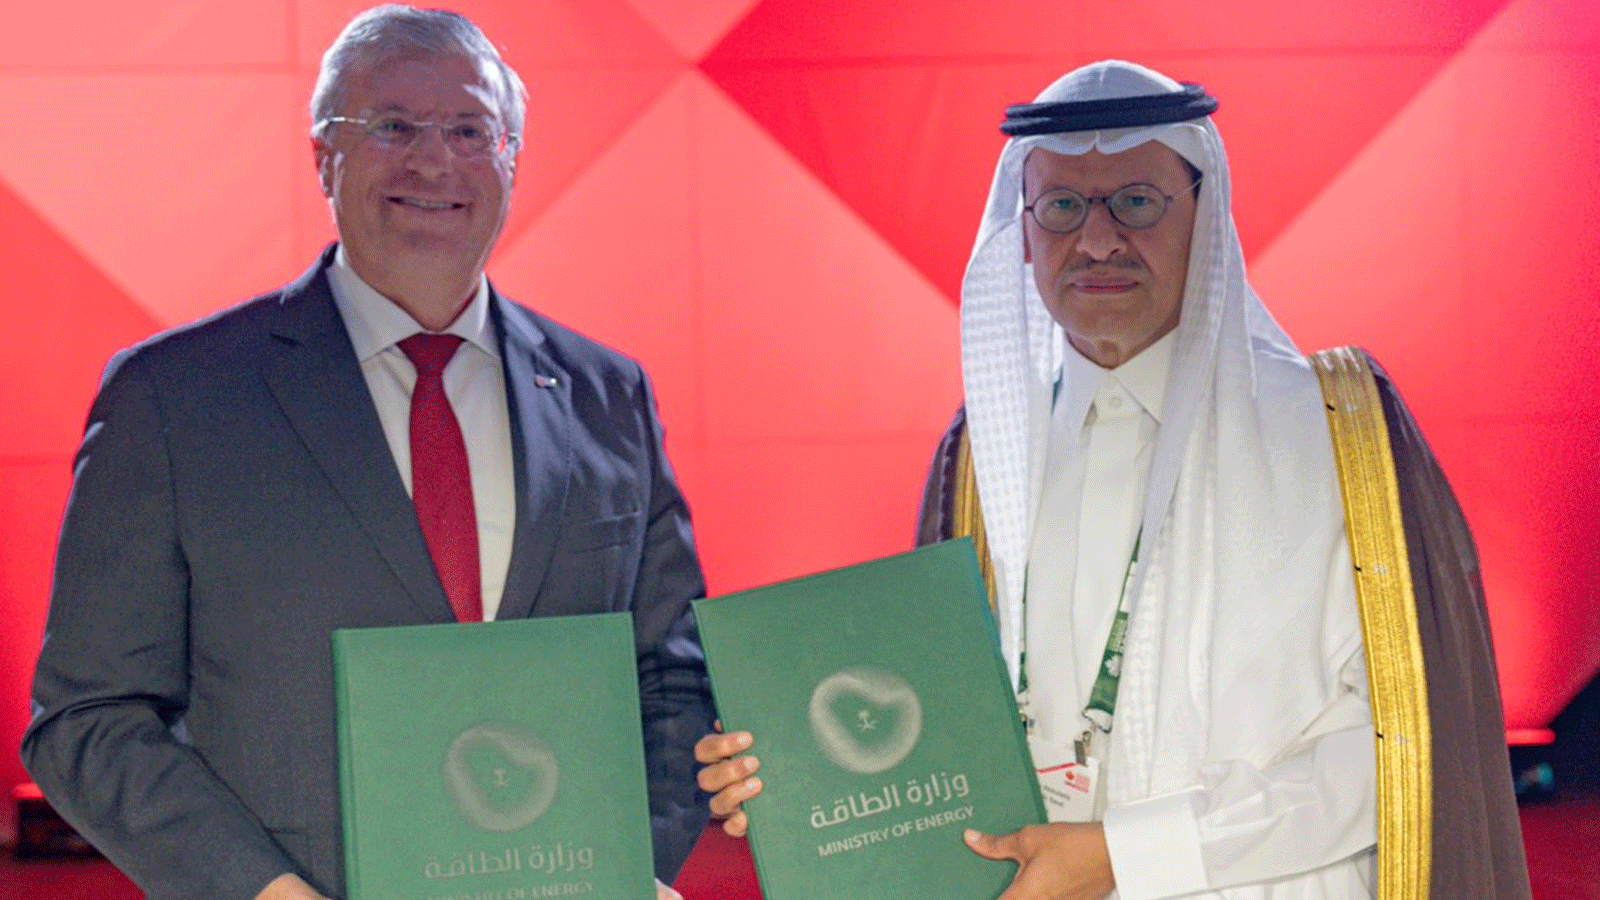 وزير الطاقة السعودي الأمير عبدالعزيز بن سلمان، بعد توقيع مذكرة تفاهم مع بيدرو ميراس رئيس مجلس البترول العالمي بشأن استضافة المملكة العربية السعودية للنسخة الـ25 من المؤتمر عام 2026(وزارة الطاقة السعودية)